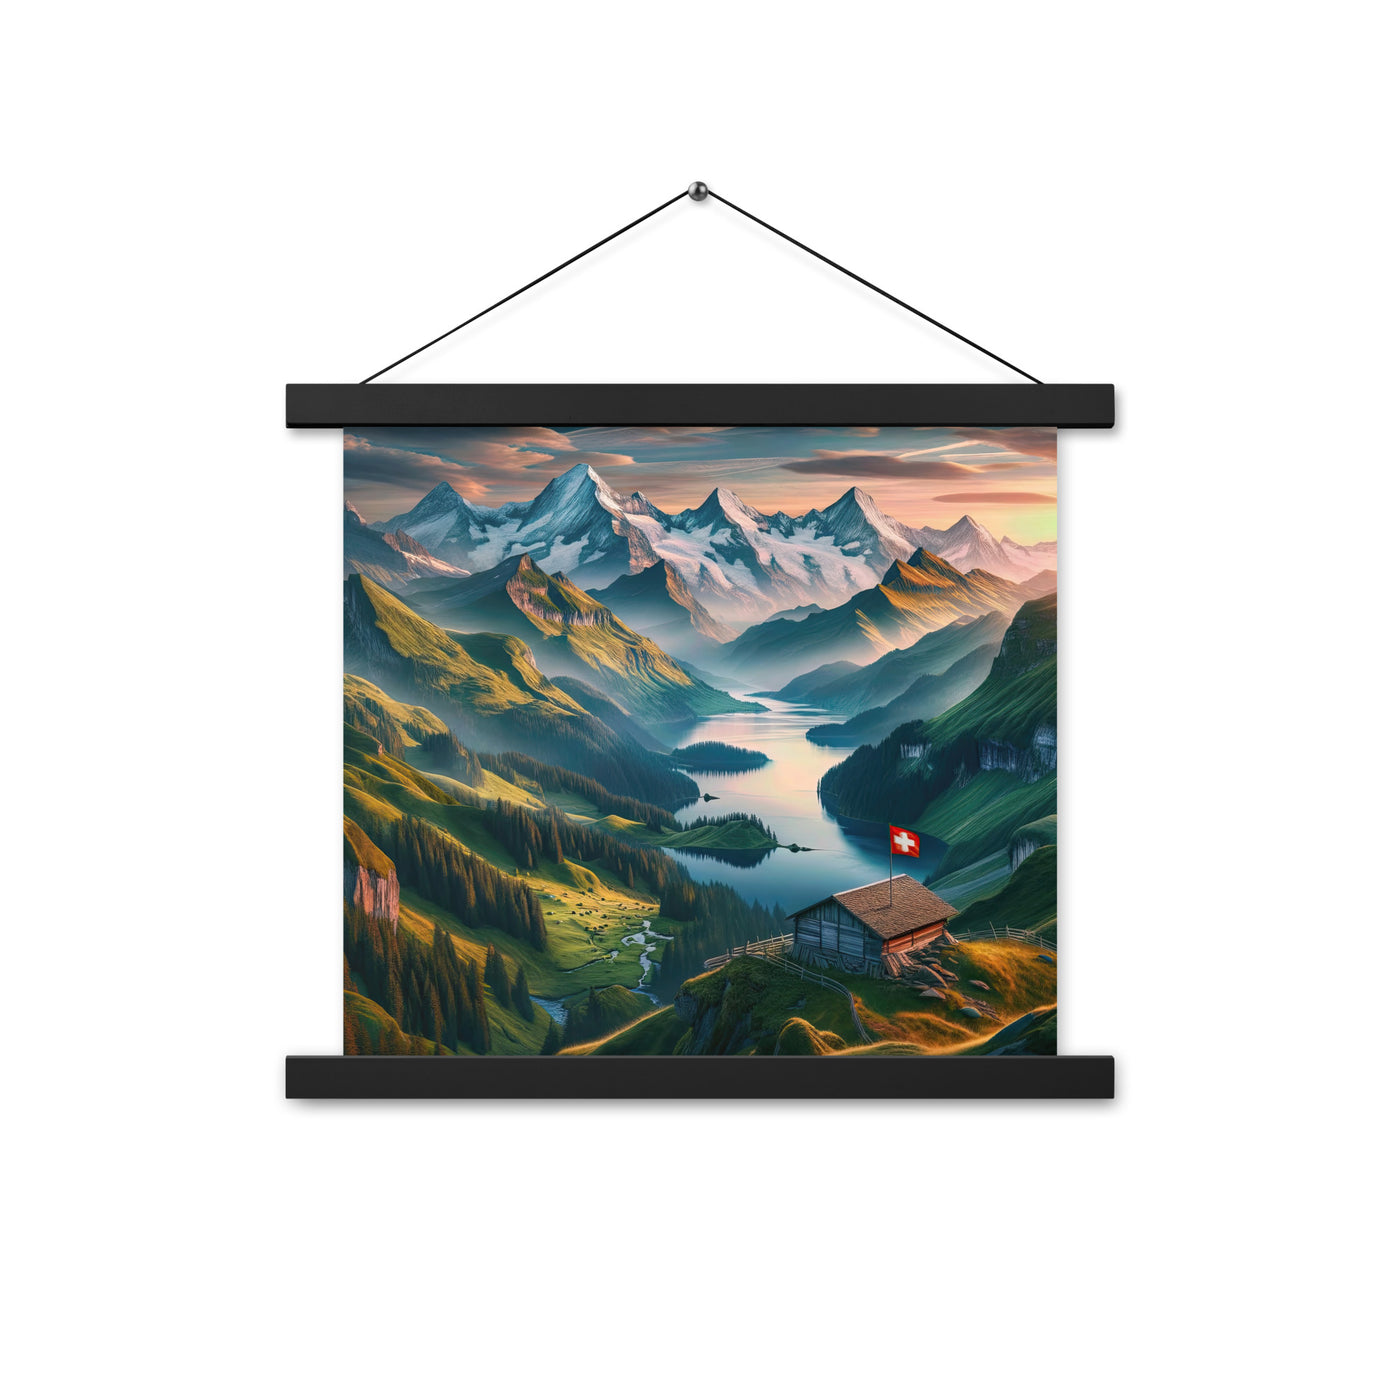 Schweizer Flagge, Alpenidylle: Dämmerlicht, epische Berge und stille Gewässer - Premium Poster mit Aufhängung berge xxx yyy zzz 35.6 x 35.6 cm